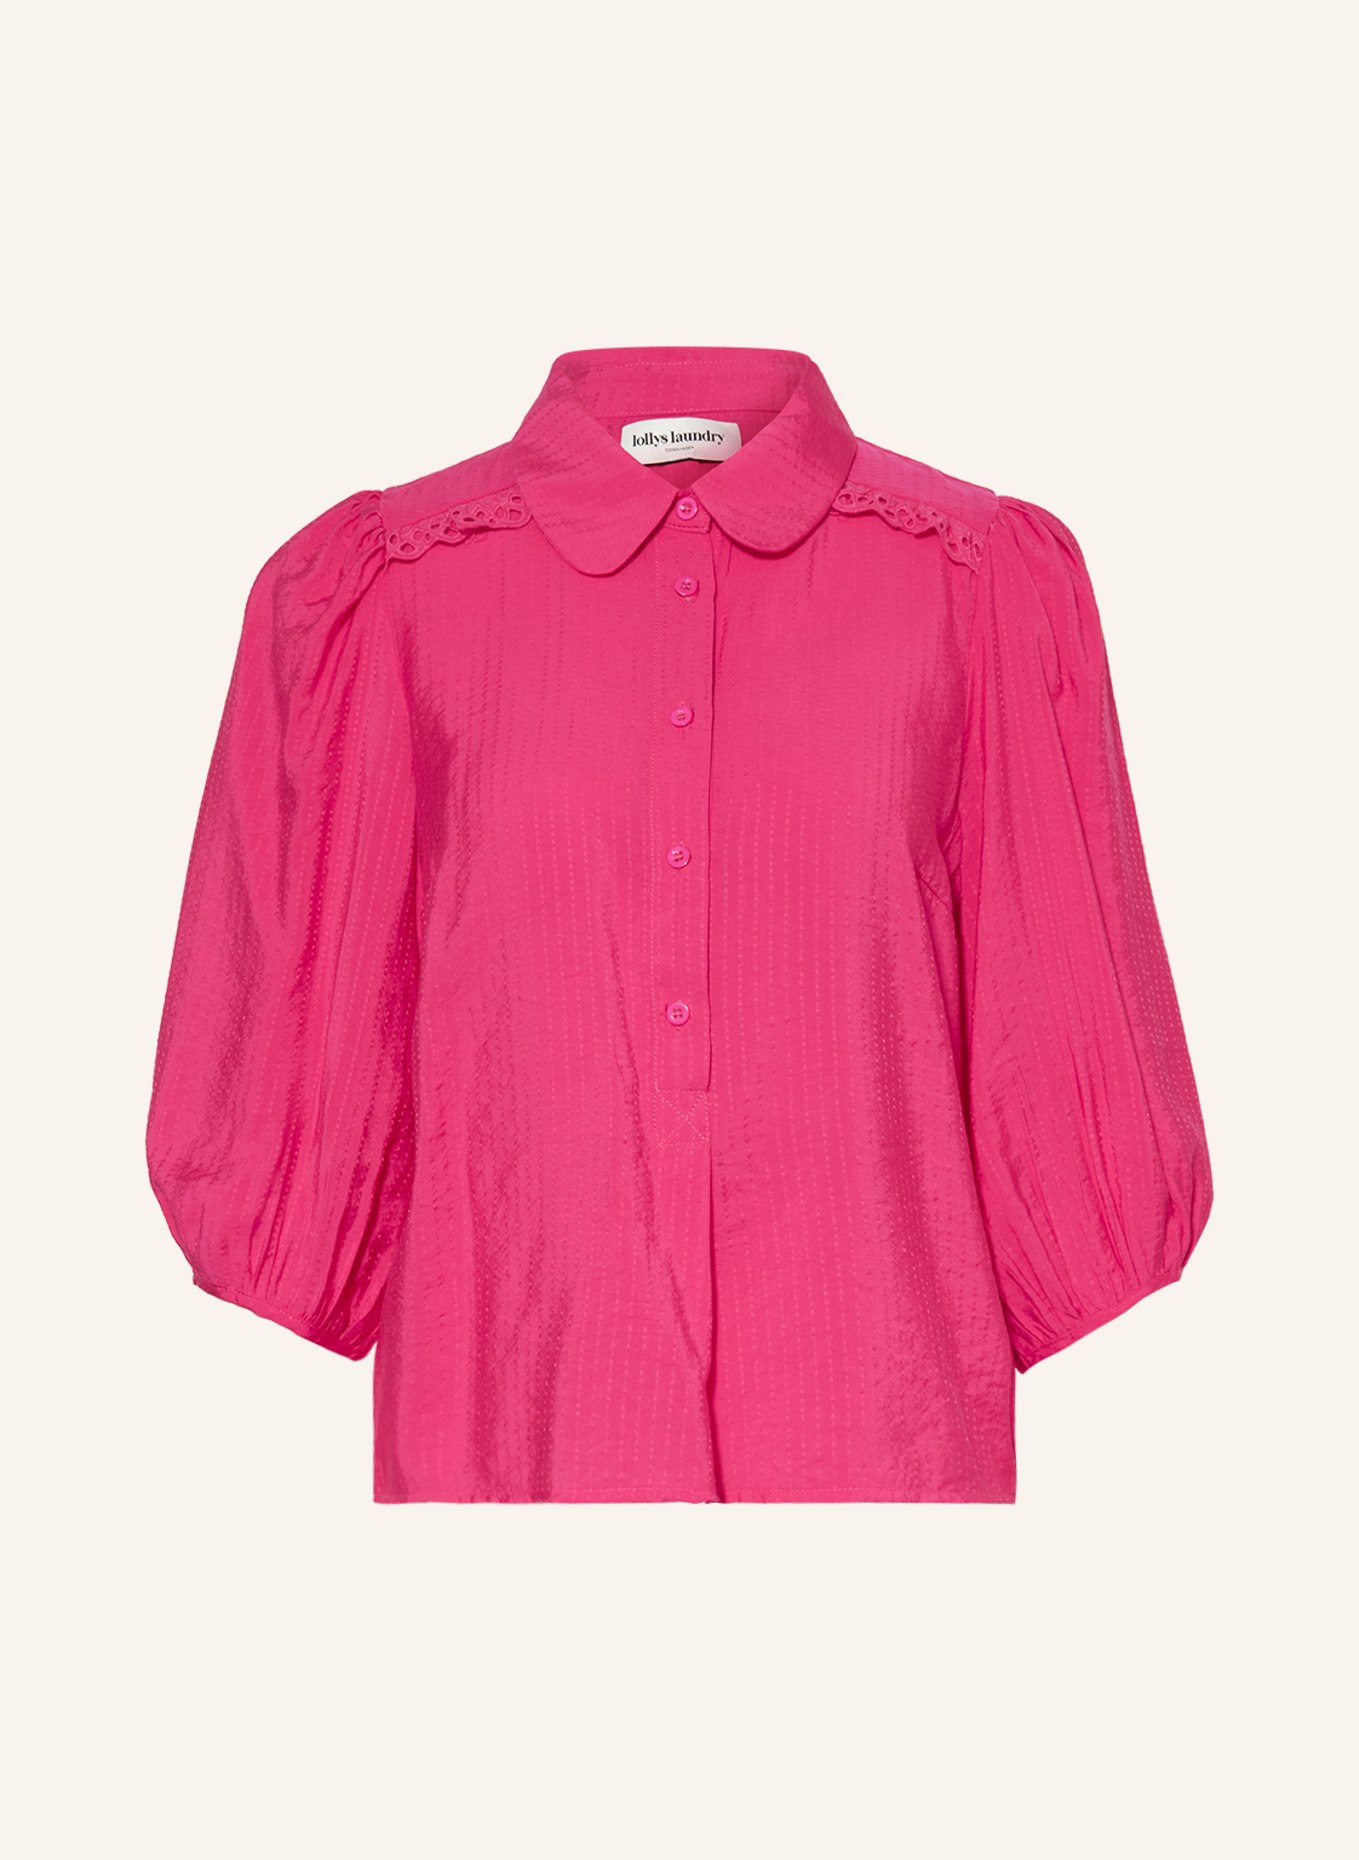 lollys laundry Blusenshirt TUNIS mit 3/4-Arm und Lochspitze, Farbe: PINK (Bild 1)